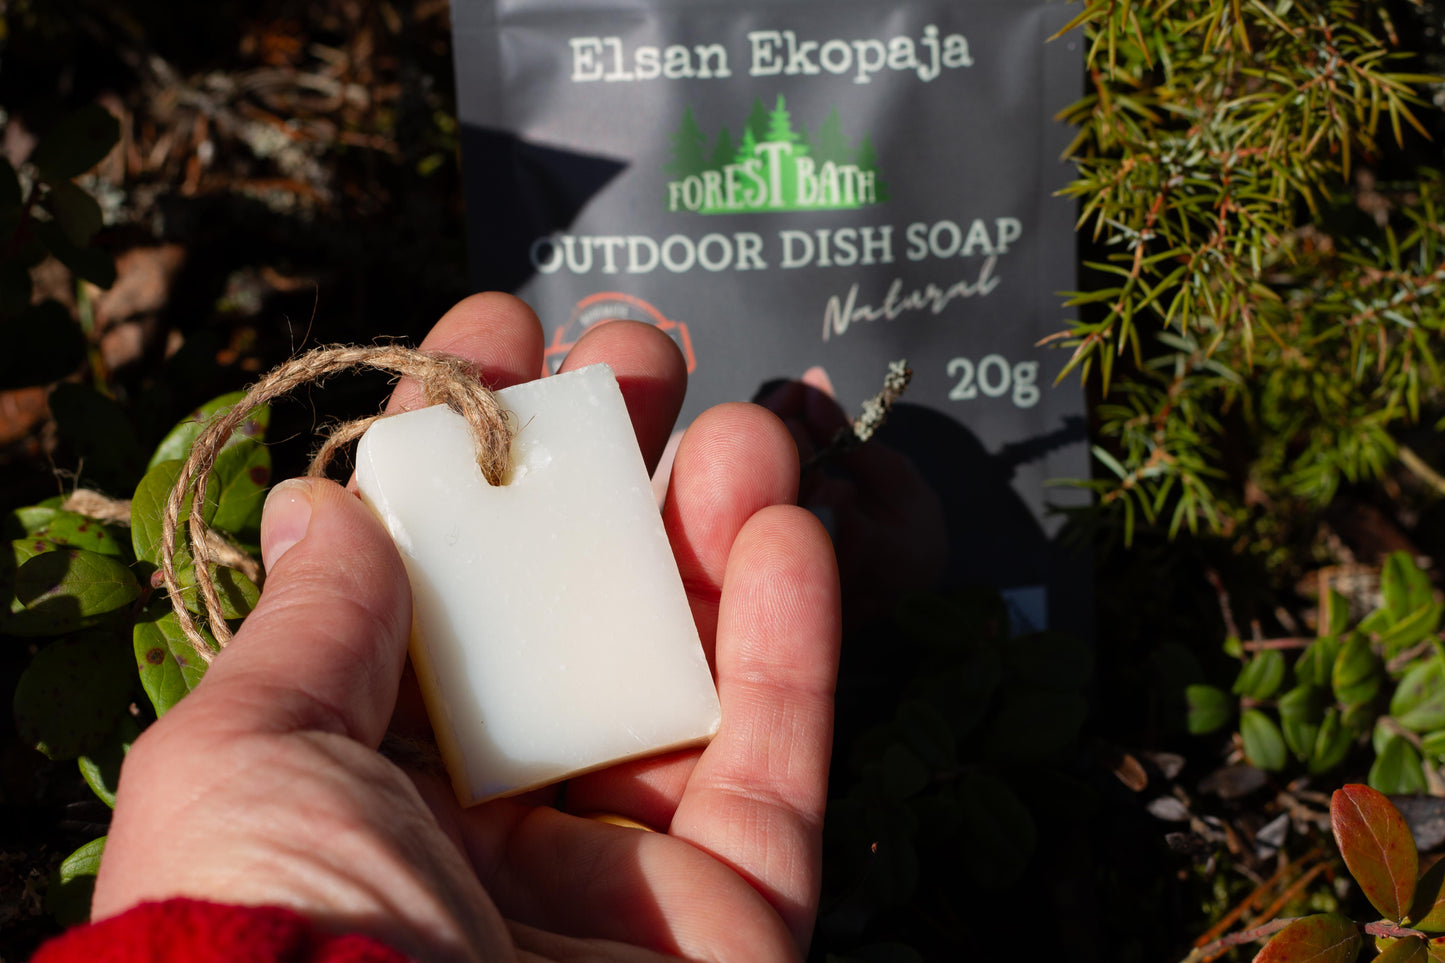 Forest Bath - outdoor dish soap. Retkeilijän Siivous -narusaippua